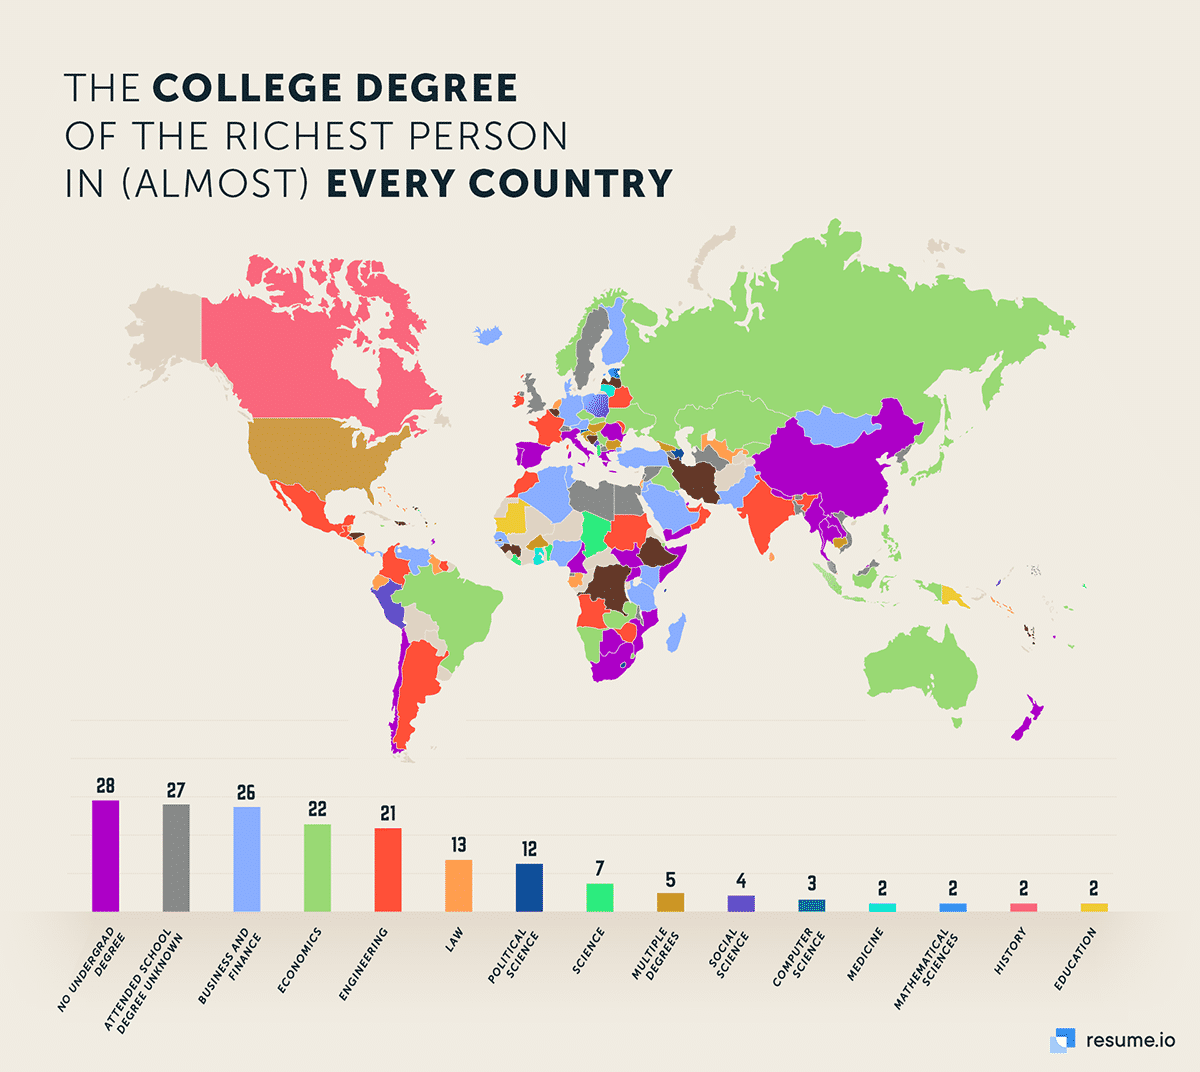 il diploma universitario della persona più ricca in quasi tutti i paesi